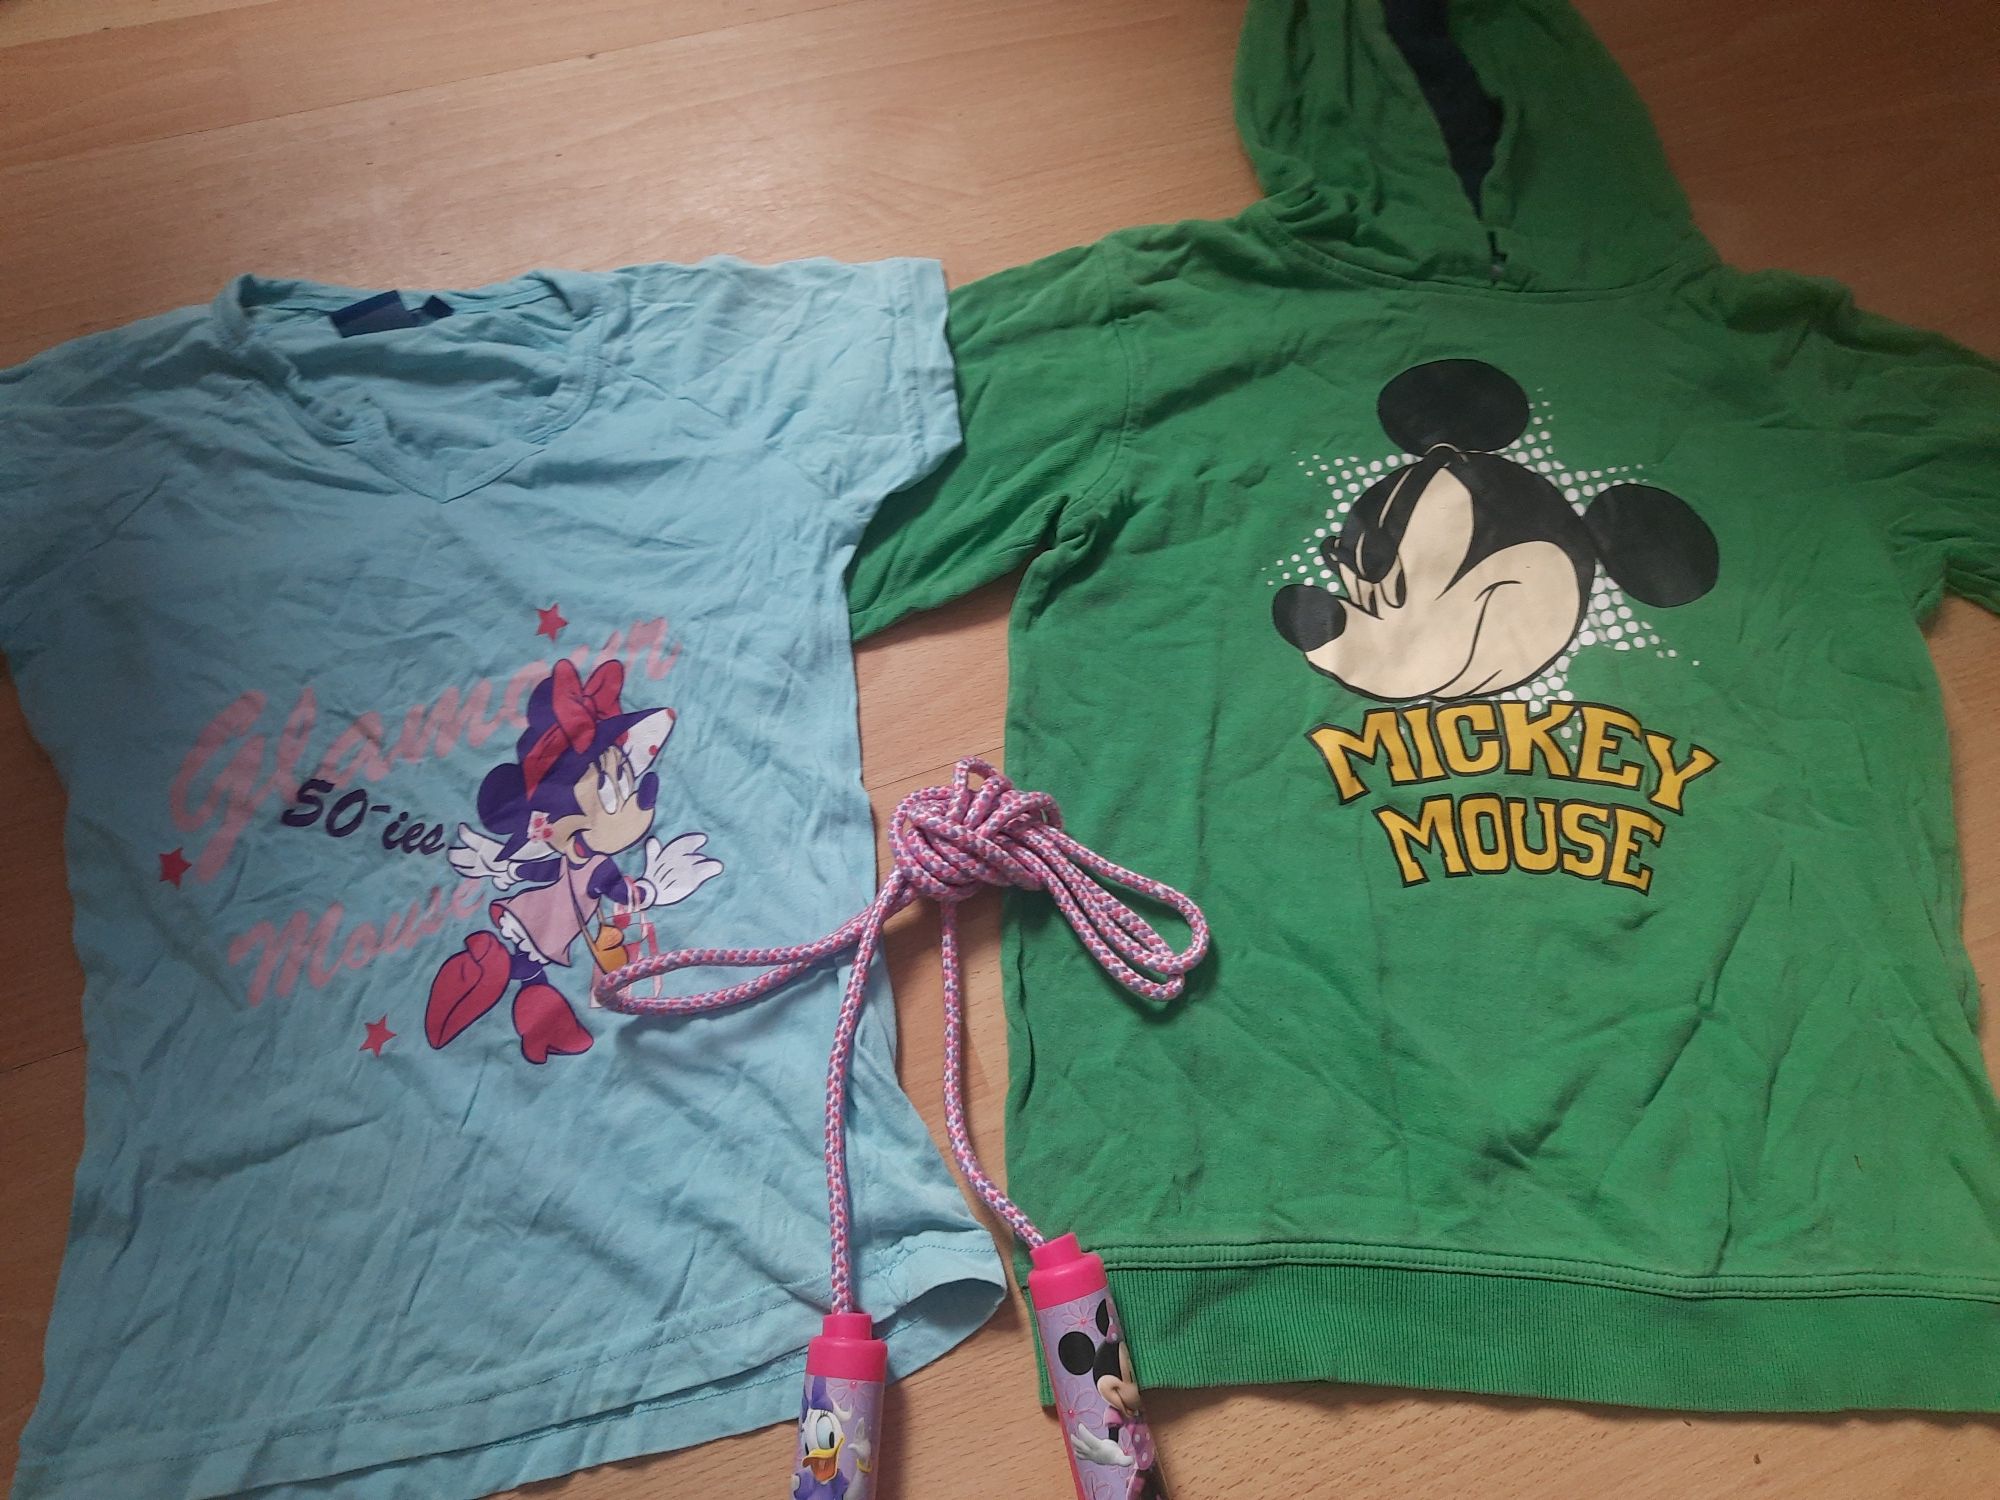 Hanorac și tricou marca Disney, cadou coardā  Disney